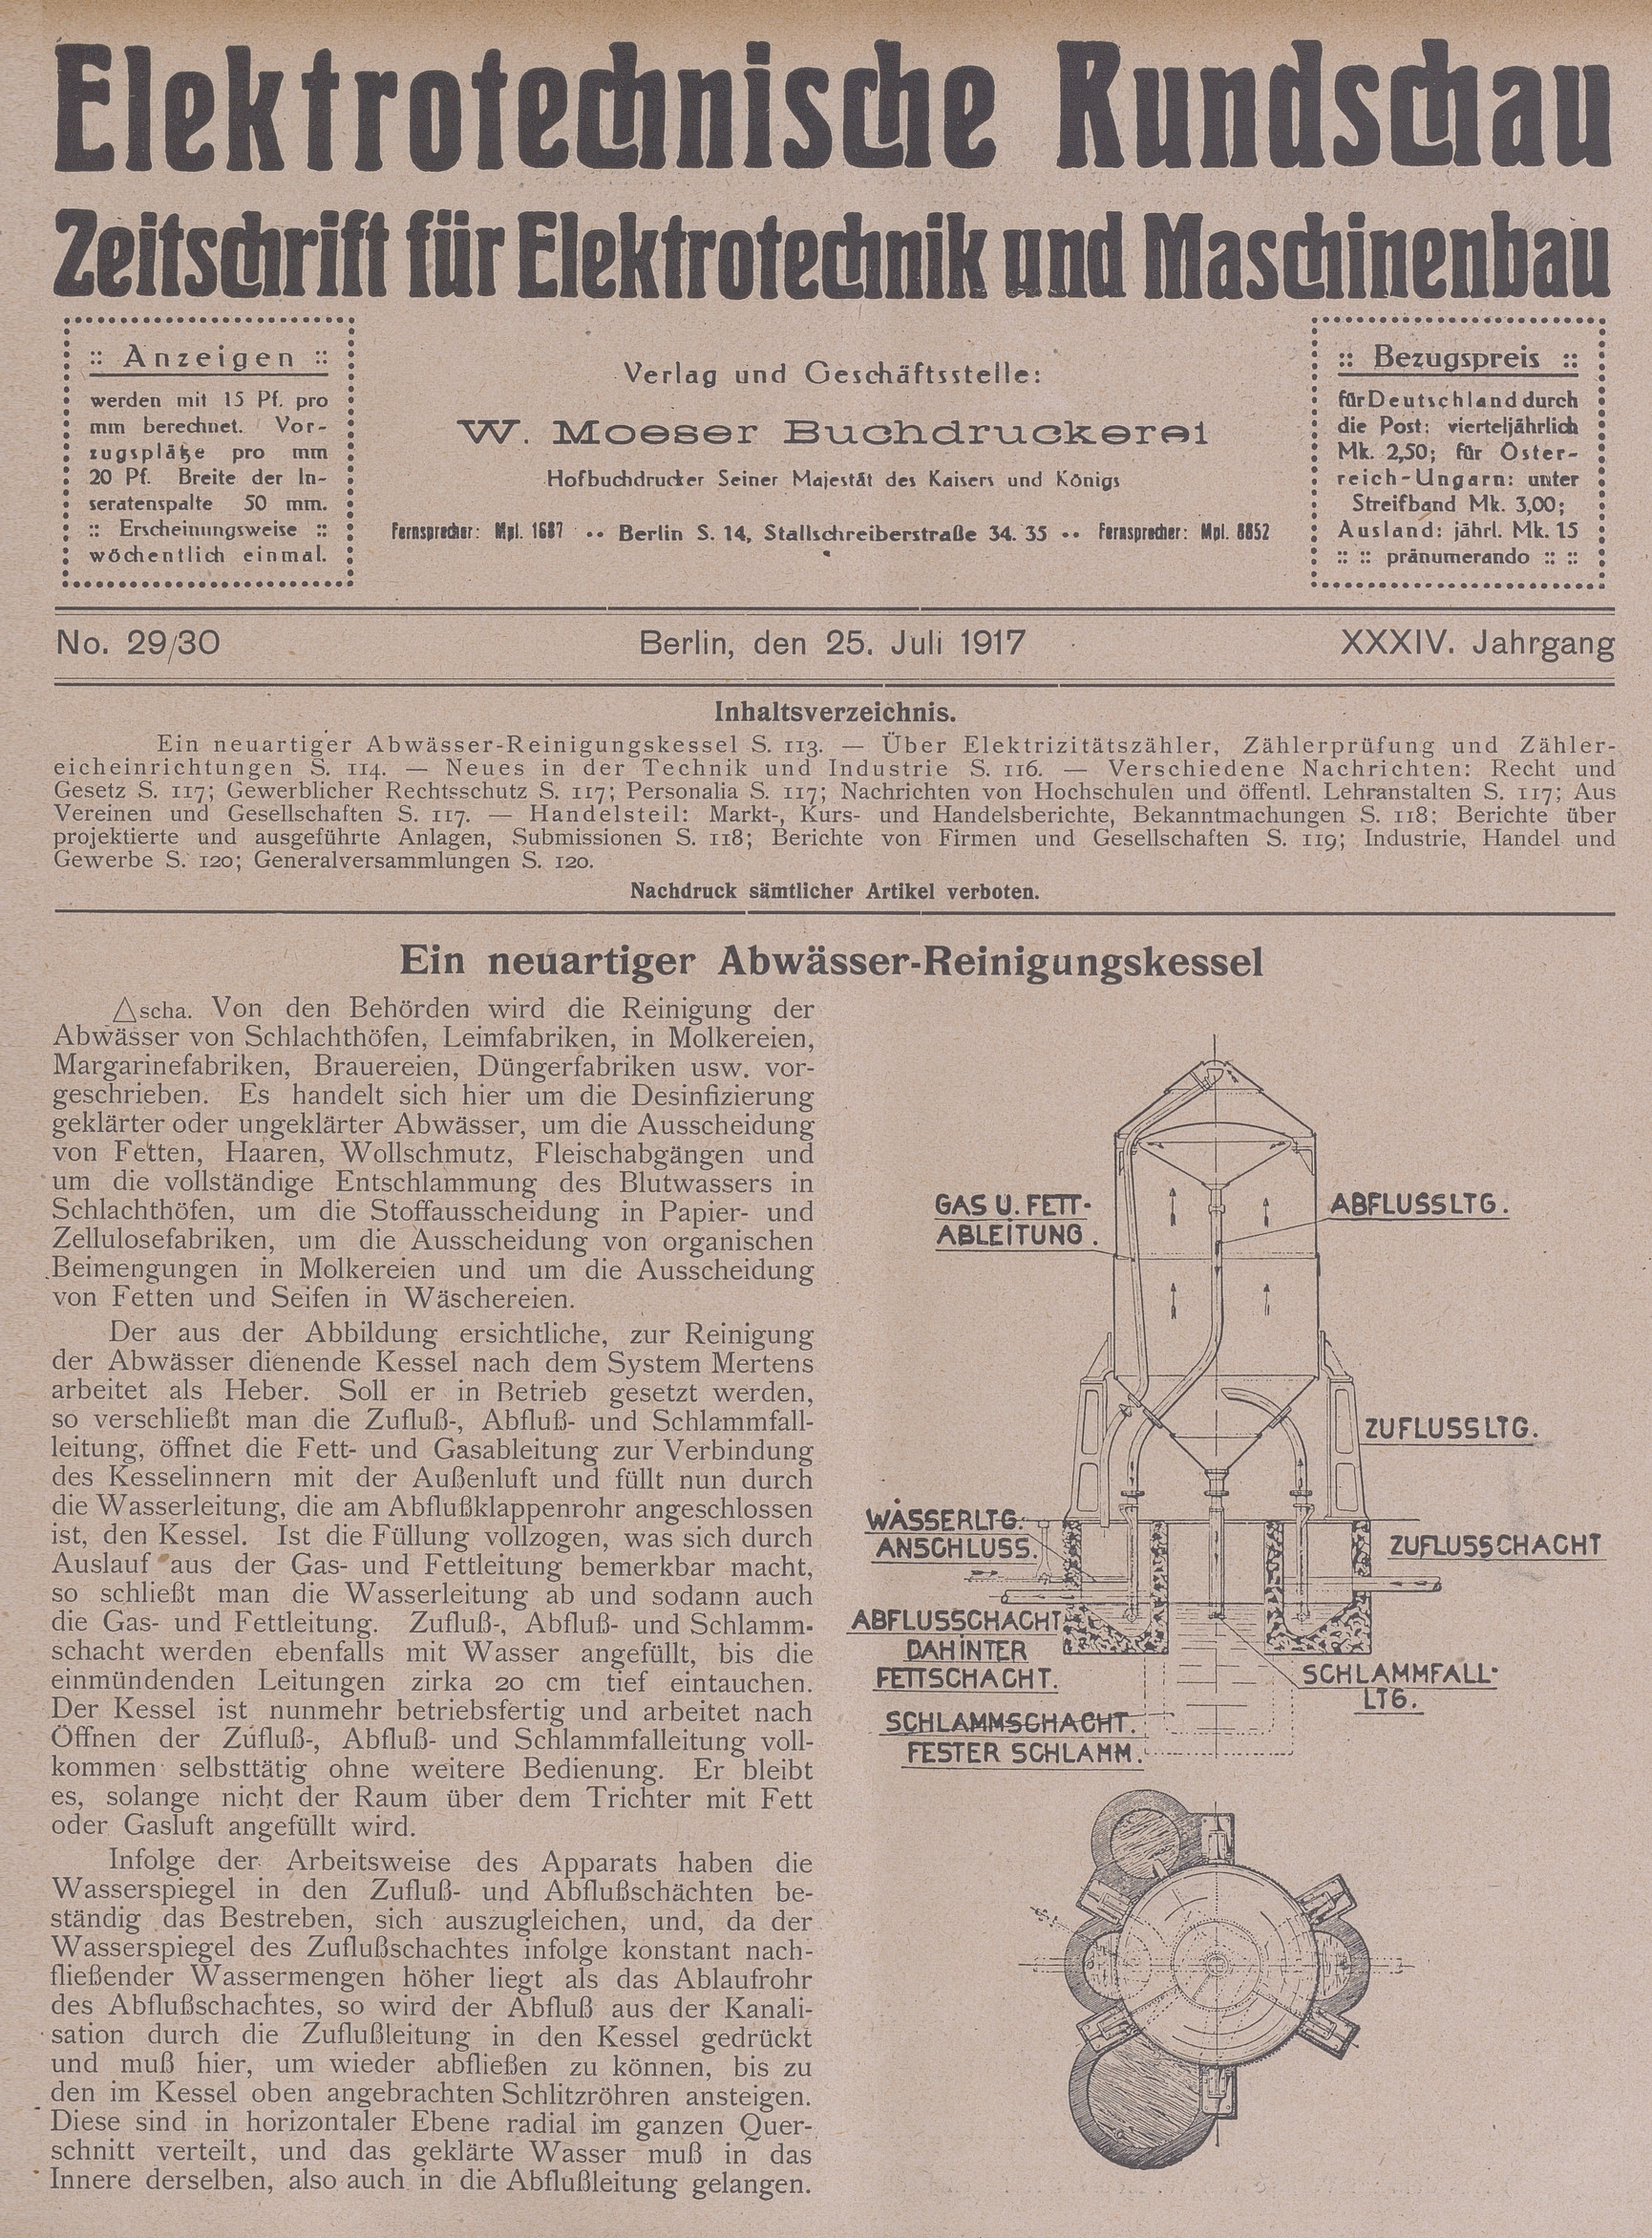 Elektrotechnische Rundschau : Zeitschrift für Elektrotechnik und Maschinenbau + Polytechnische Rundschau, No. 29/30, XXXIV. Jahrgang